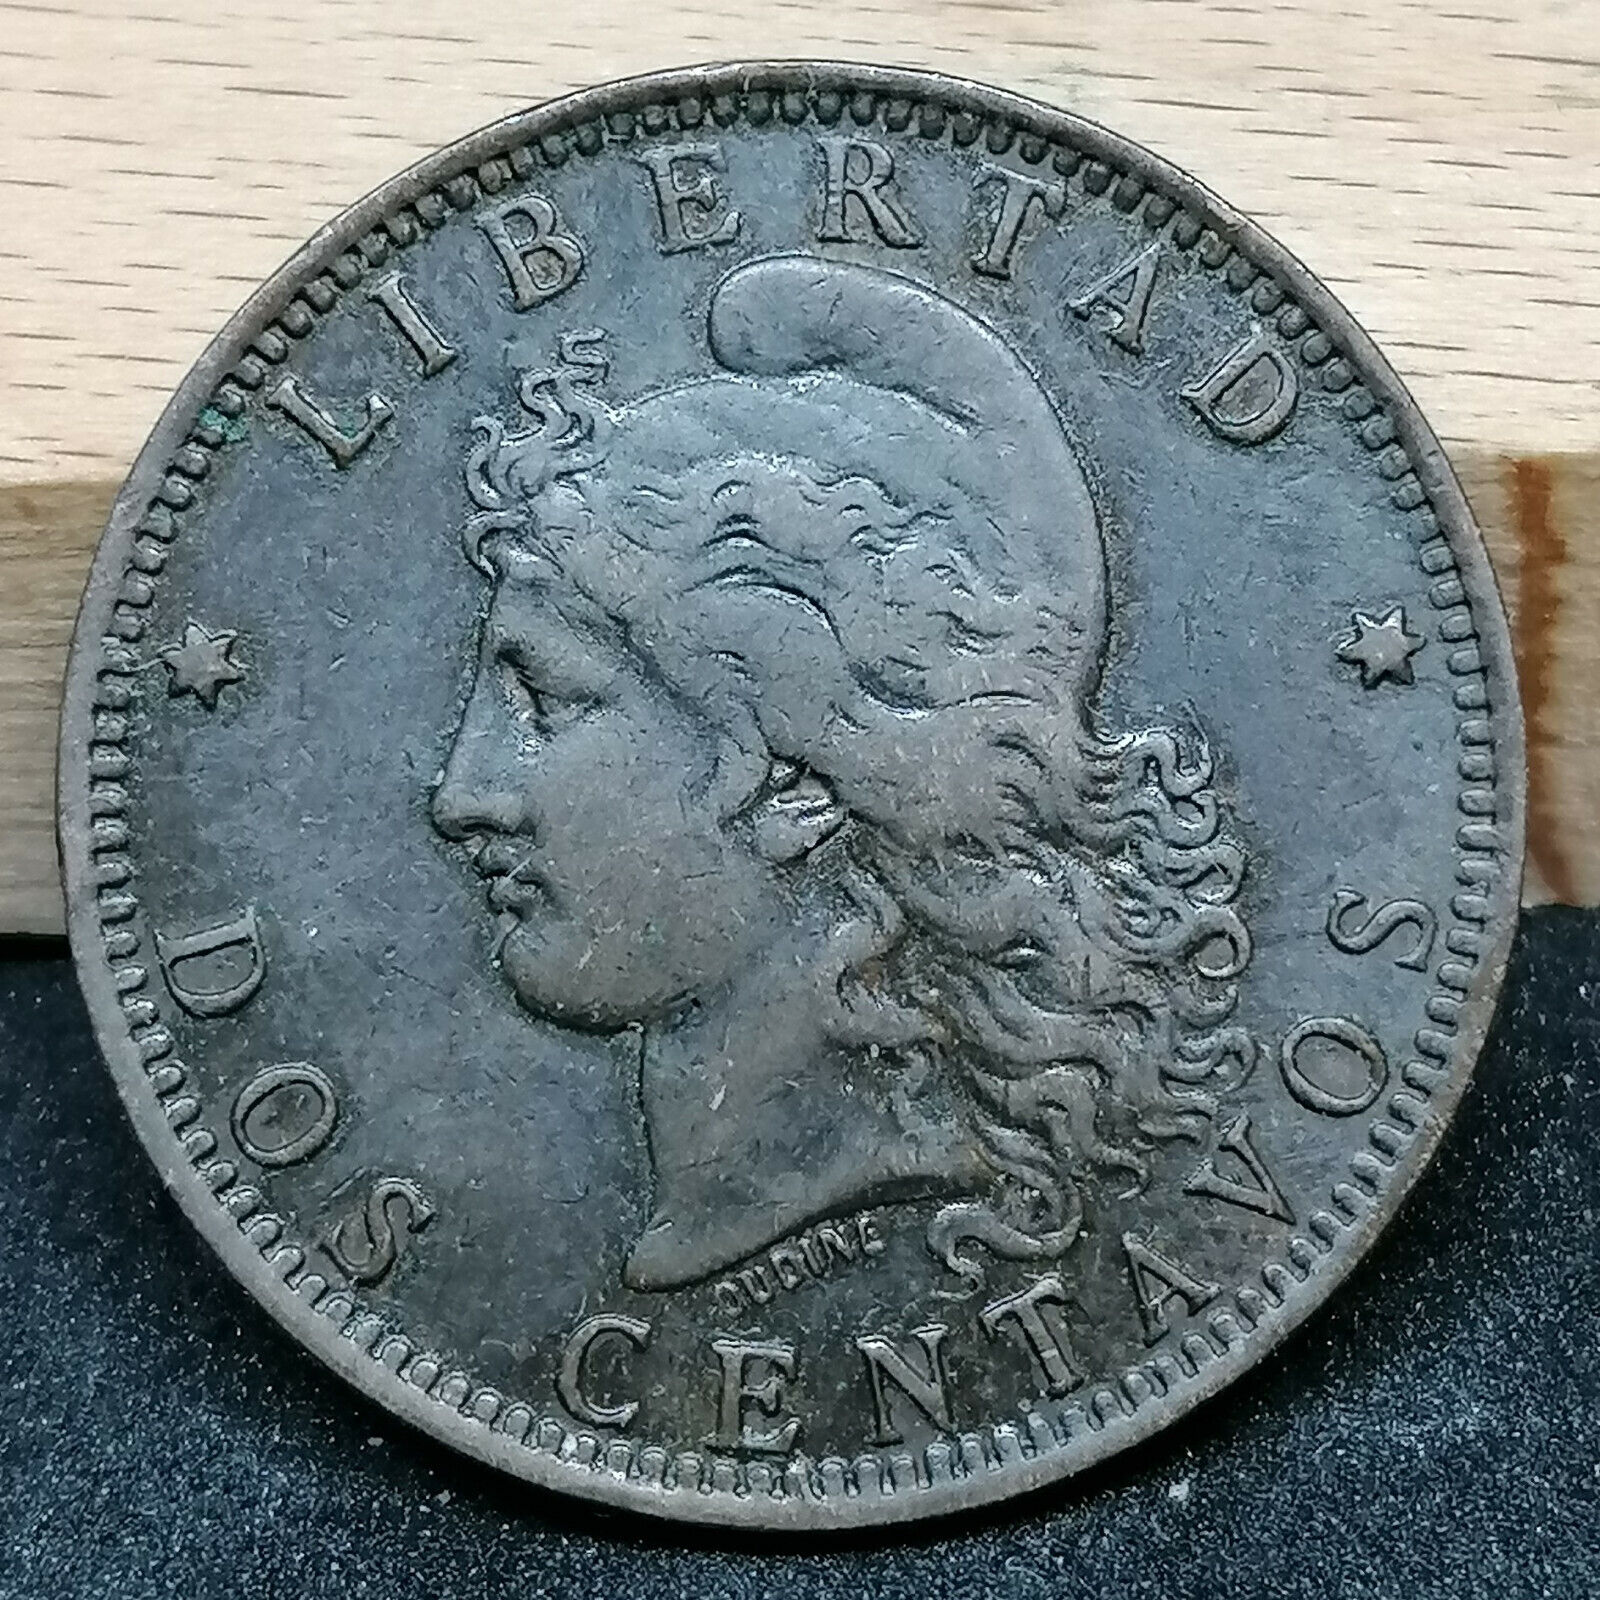 Argentina Dos 2 Centavos Coin 1891